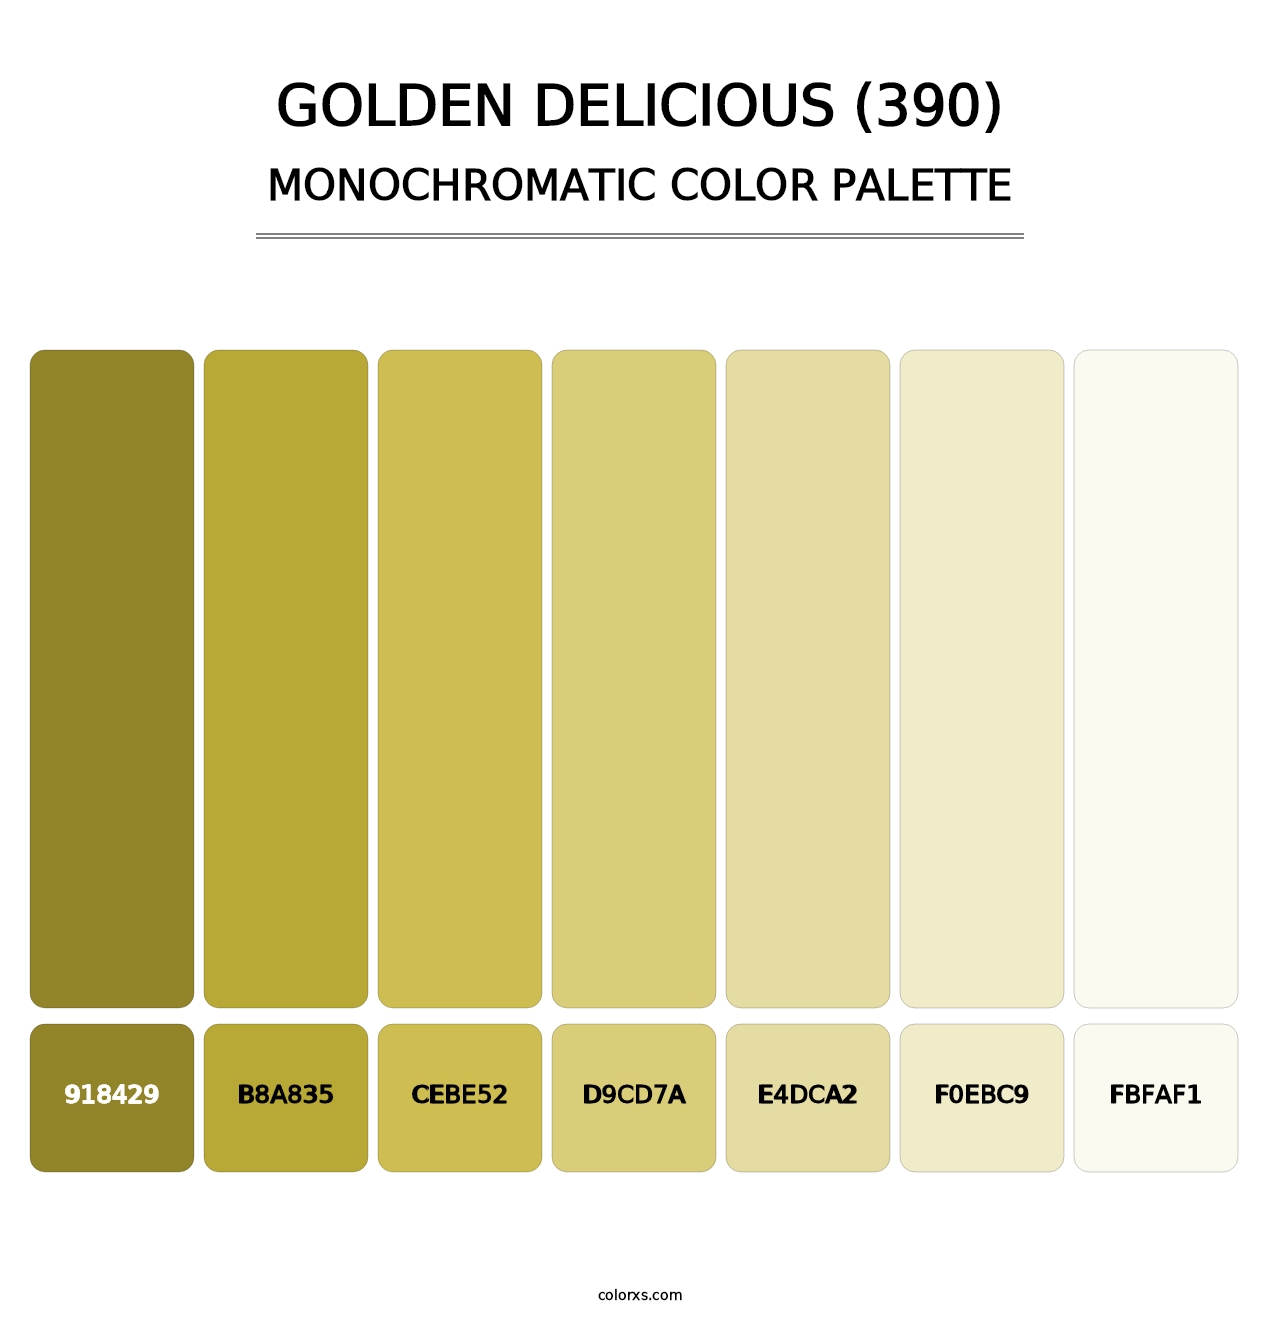 Golden Delicious (390) - Monochromatic Color Palette